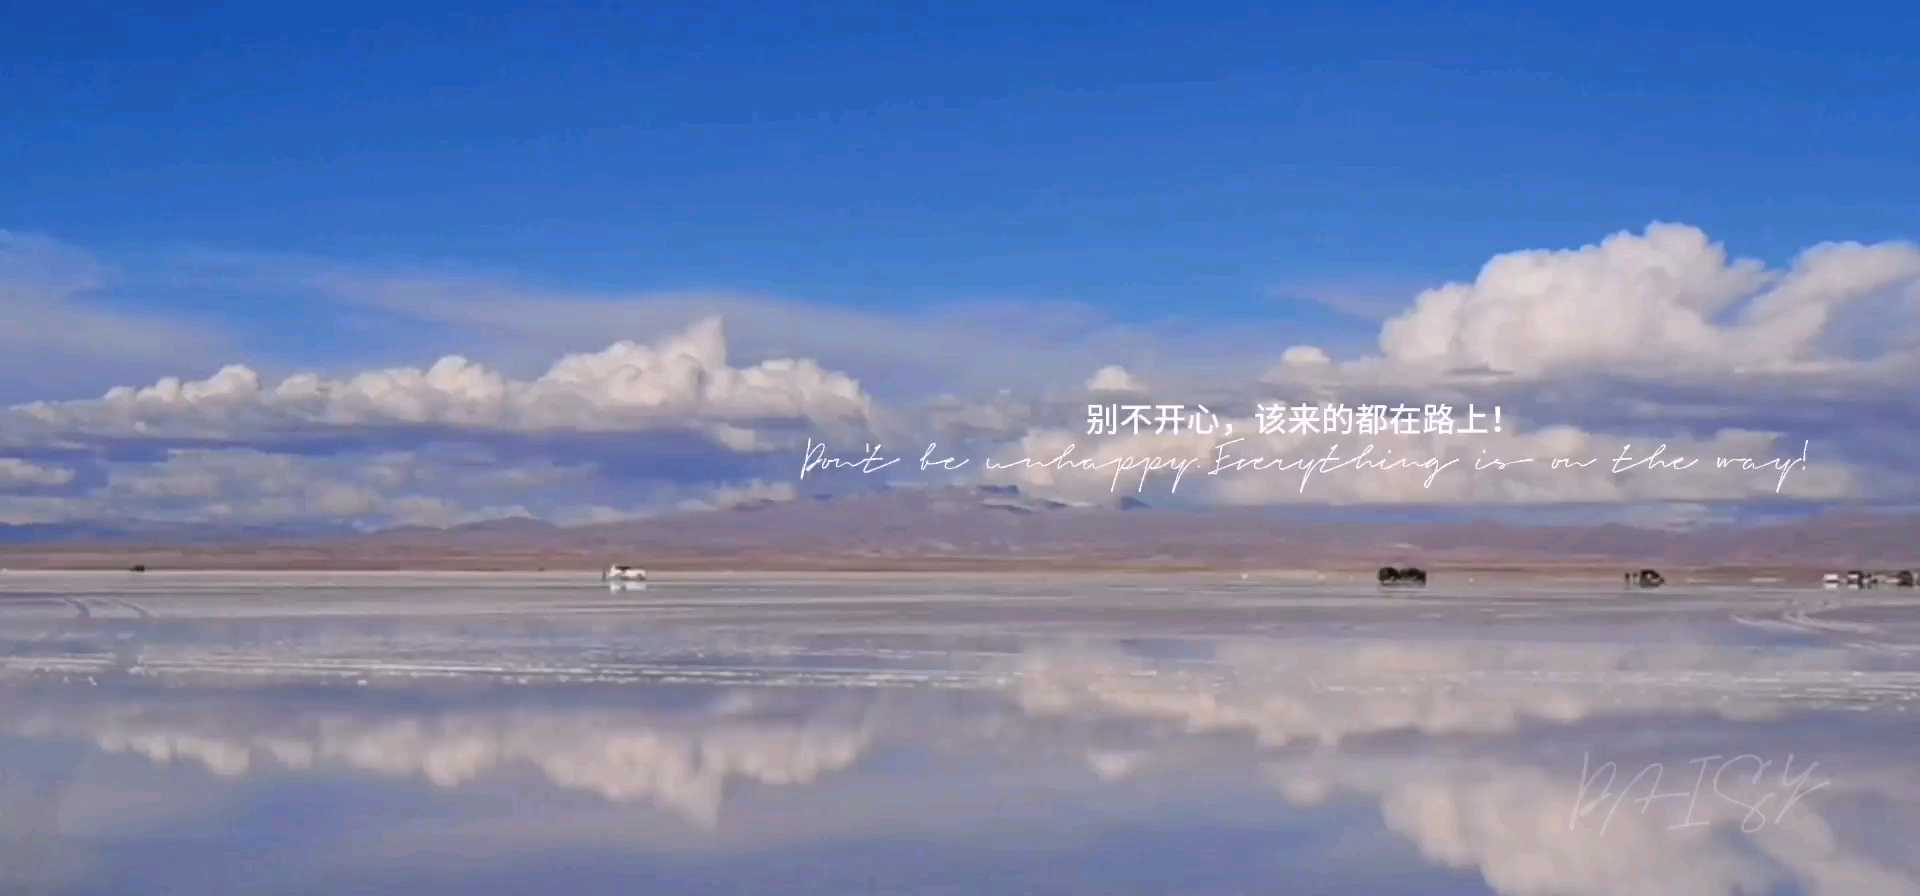 在云端丨玻利维亚遇见镜中我 梦见，遇见。 安第斯山脉之下，天空之镜乌尤尼盐湖之上。 倒影中的你，不要